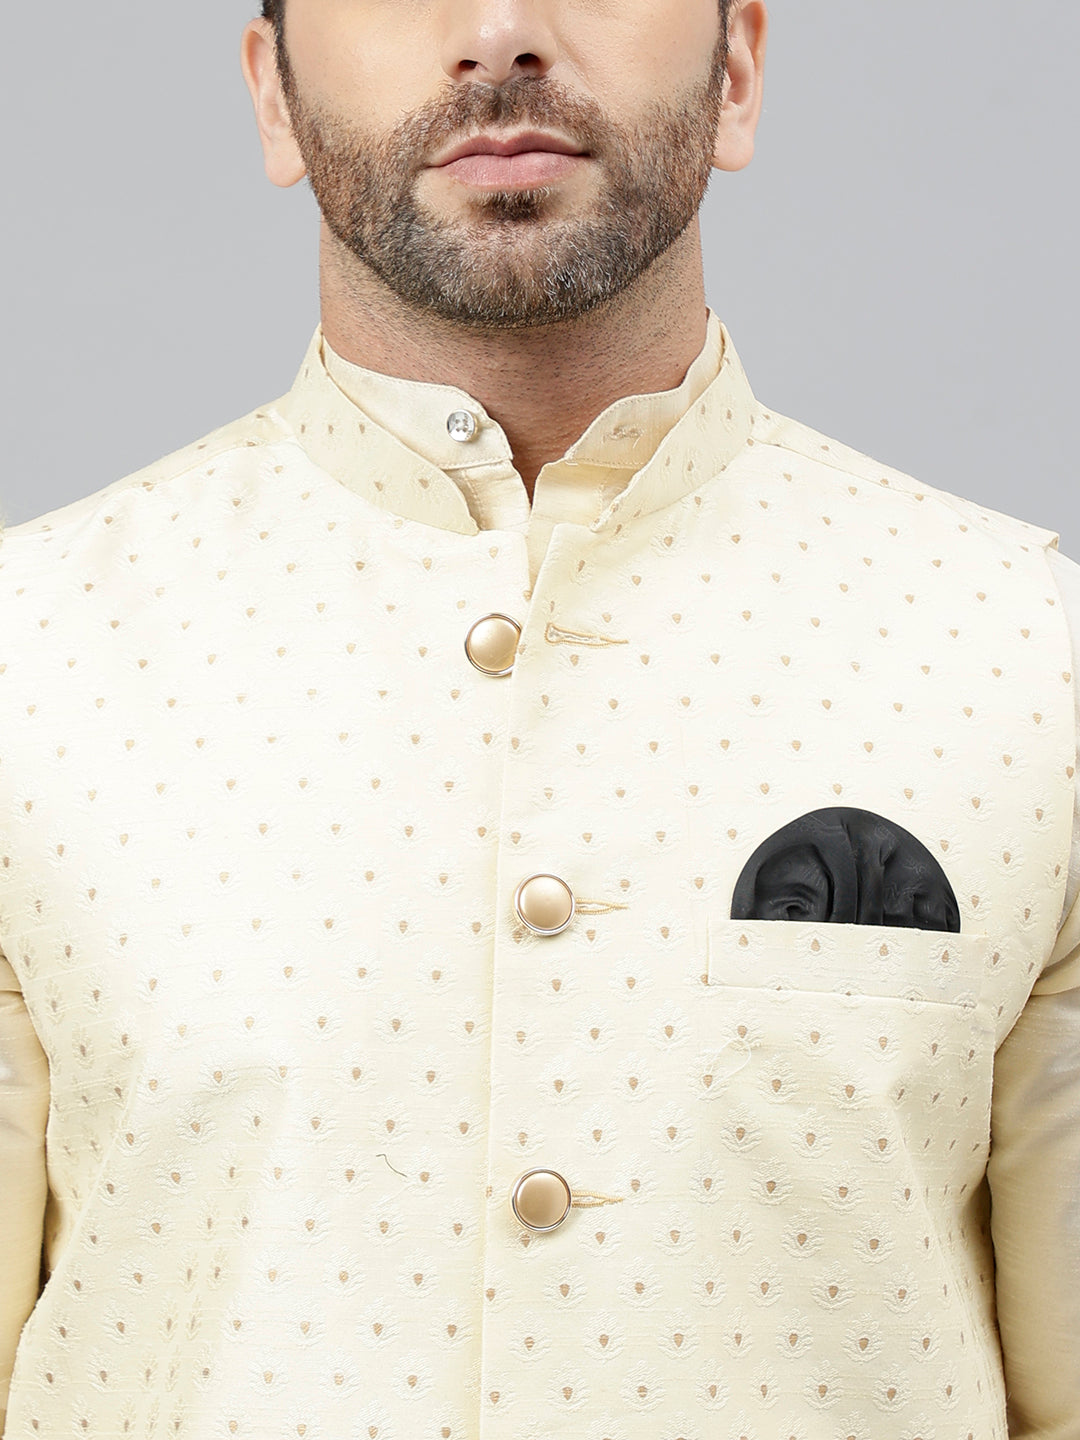 Hangup Men's Partywear Off White Nehru Jacket